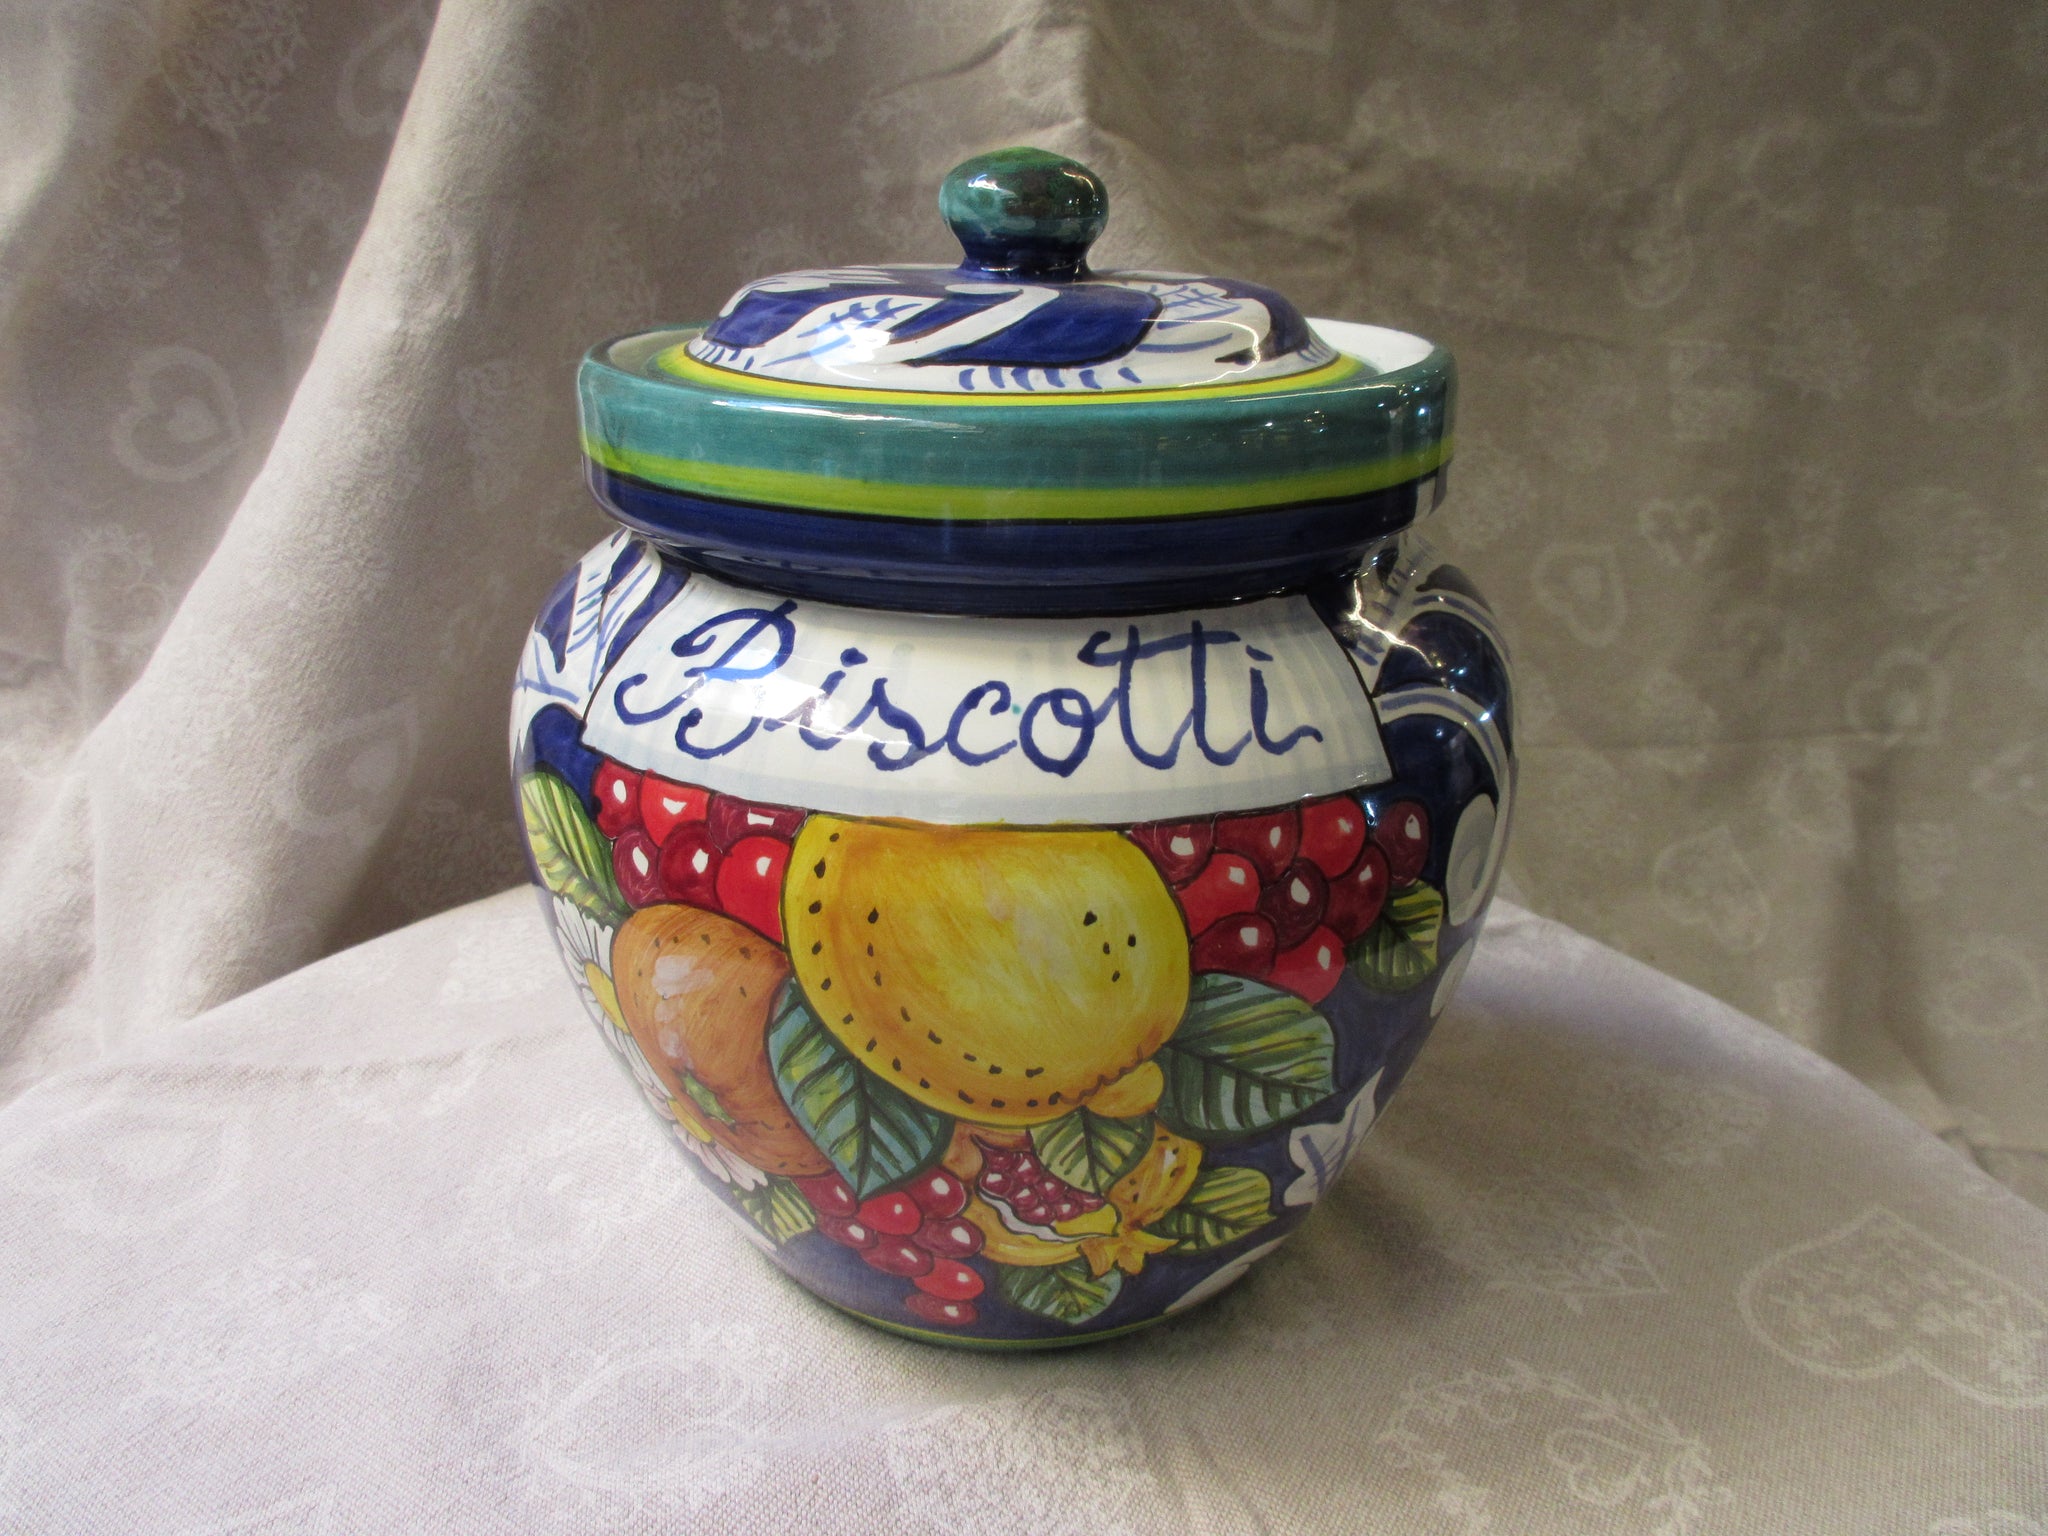 Biscotti Cookie Jar  Biscotti cookies, Biscotti, Cookie jars